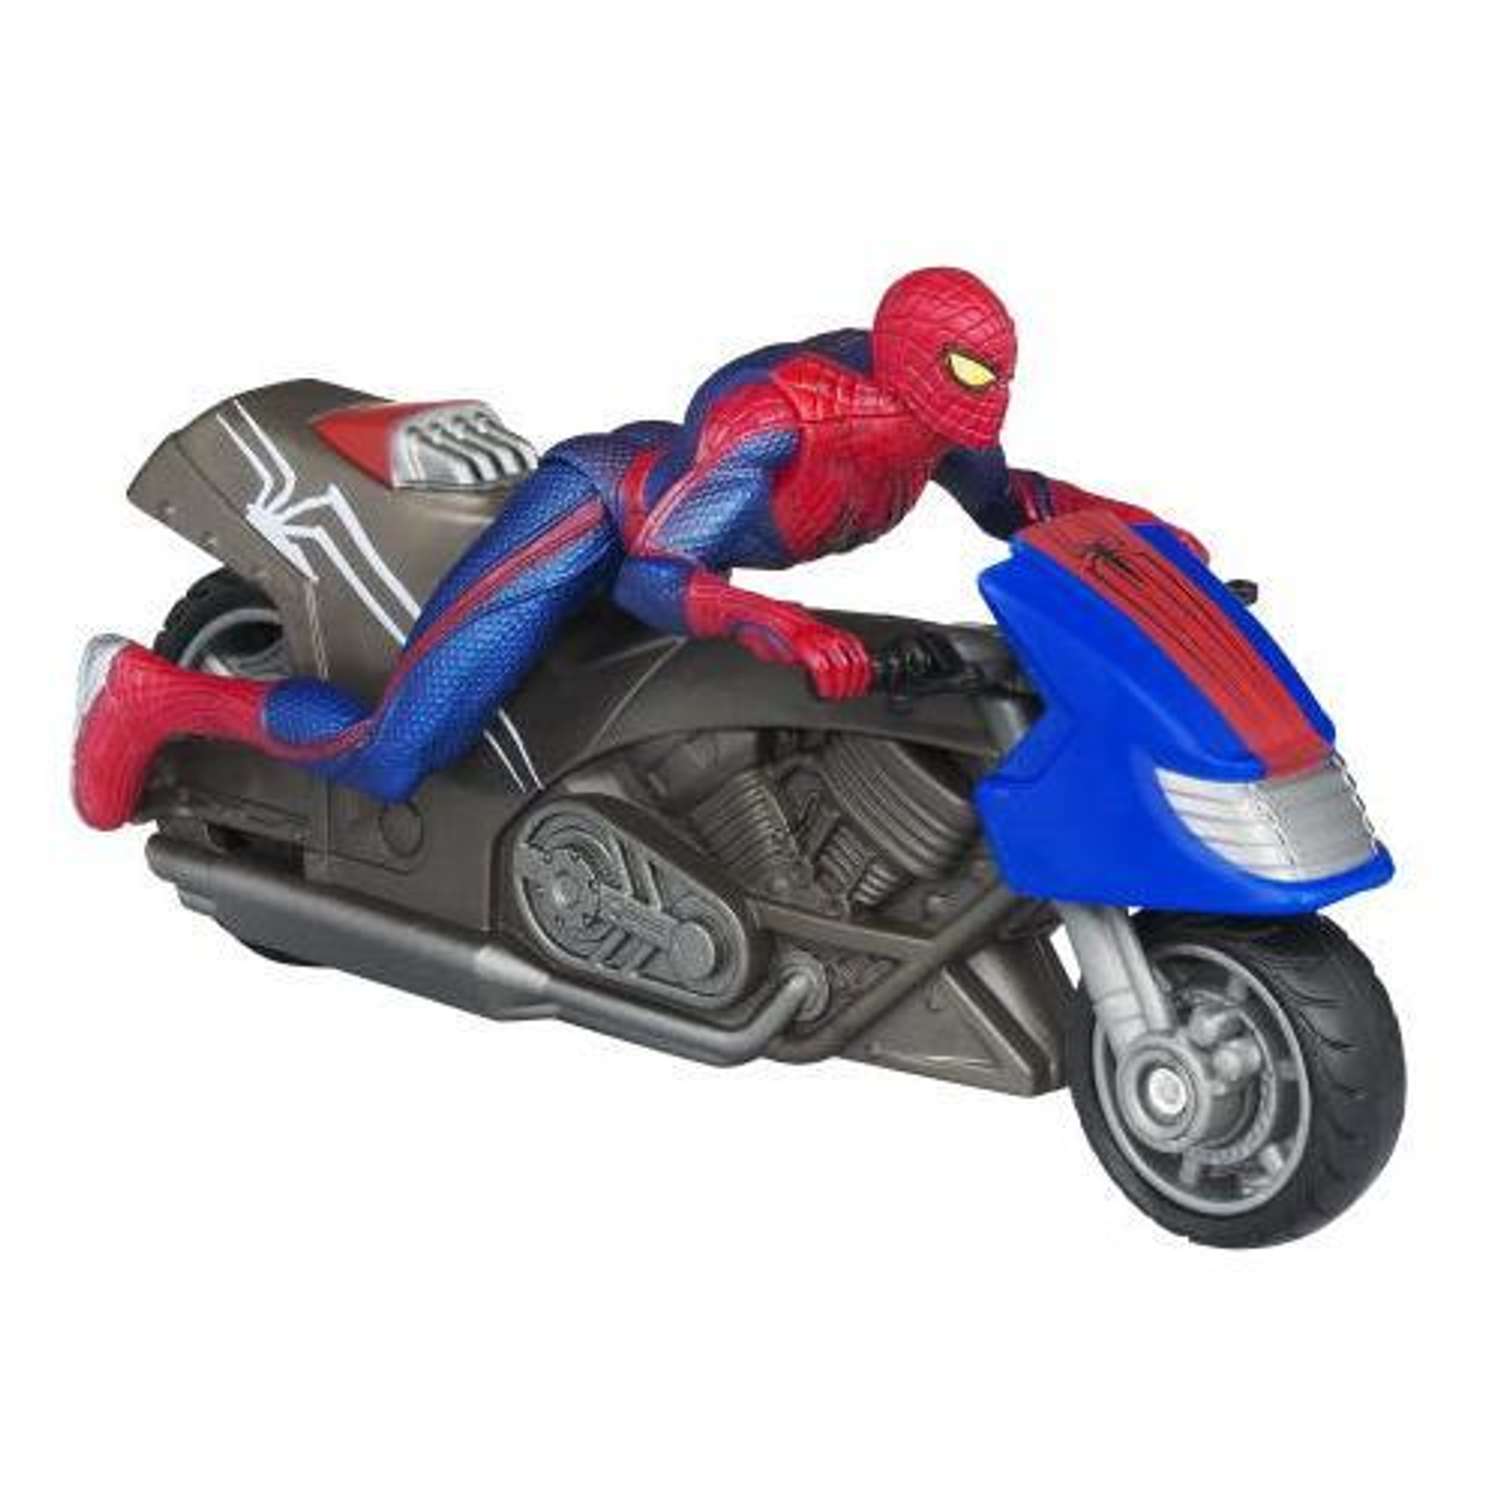 Фигурка Человек-Паук (Spider-man) Человек-паук на транспортном средстве в ассортименте - фото 1